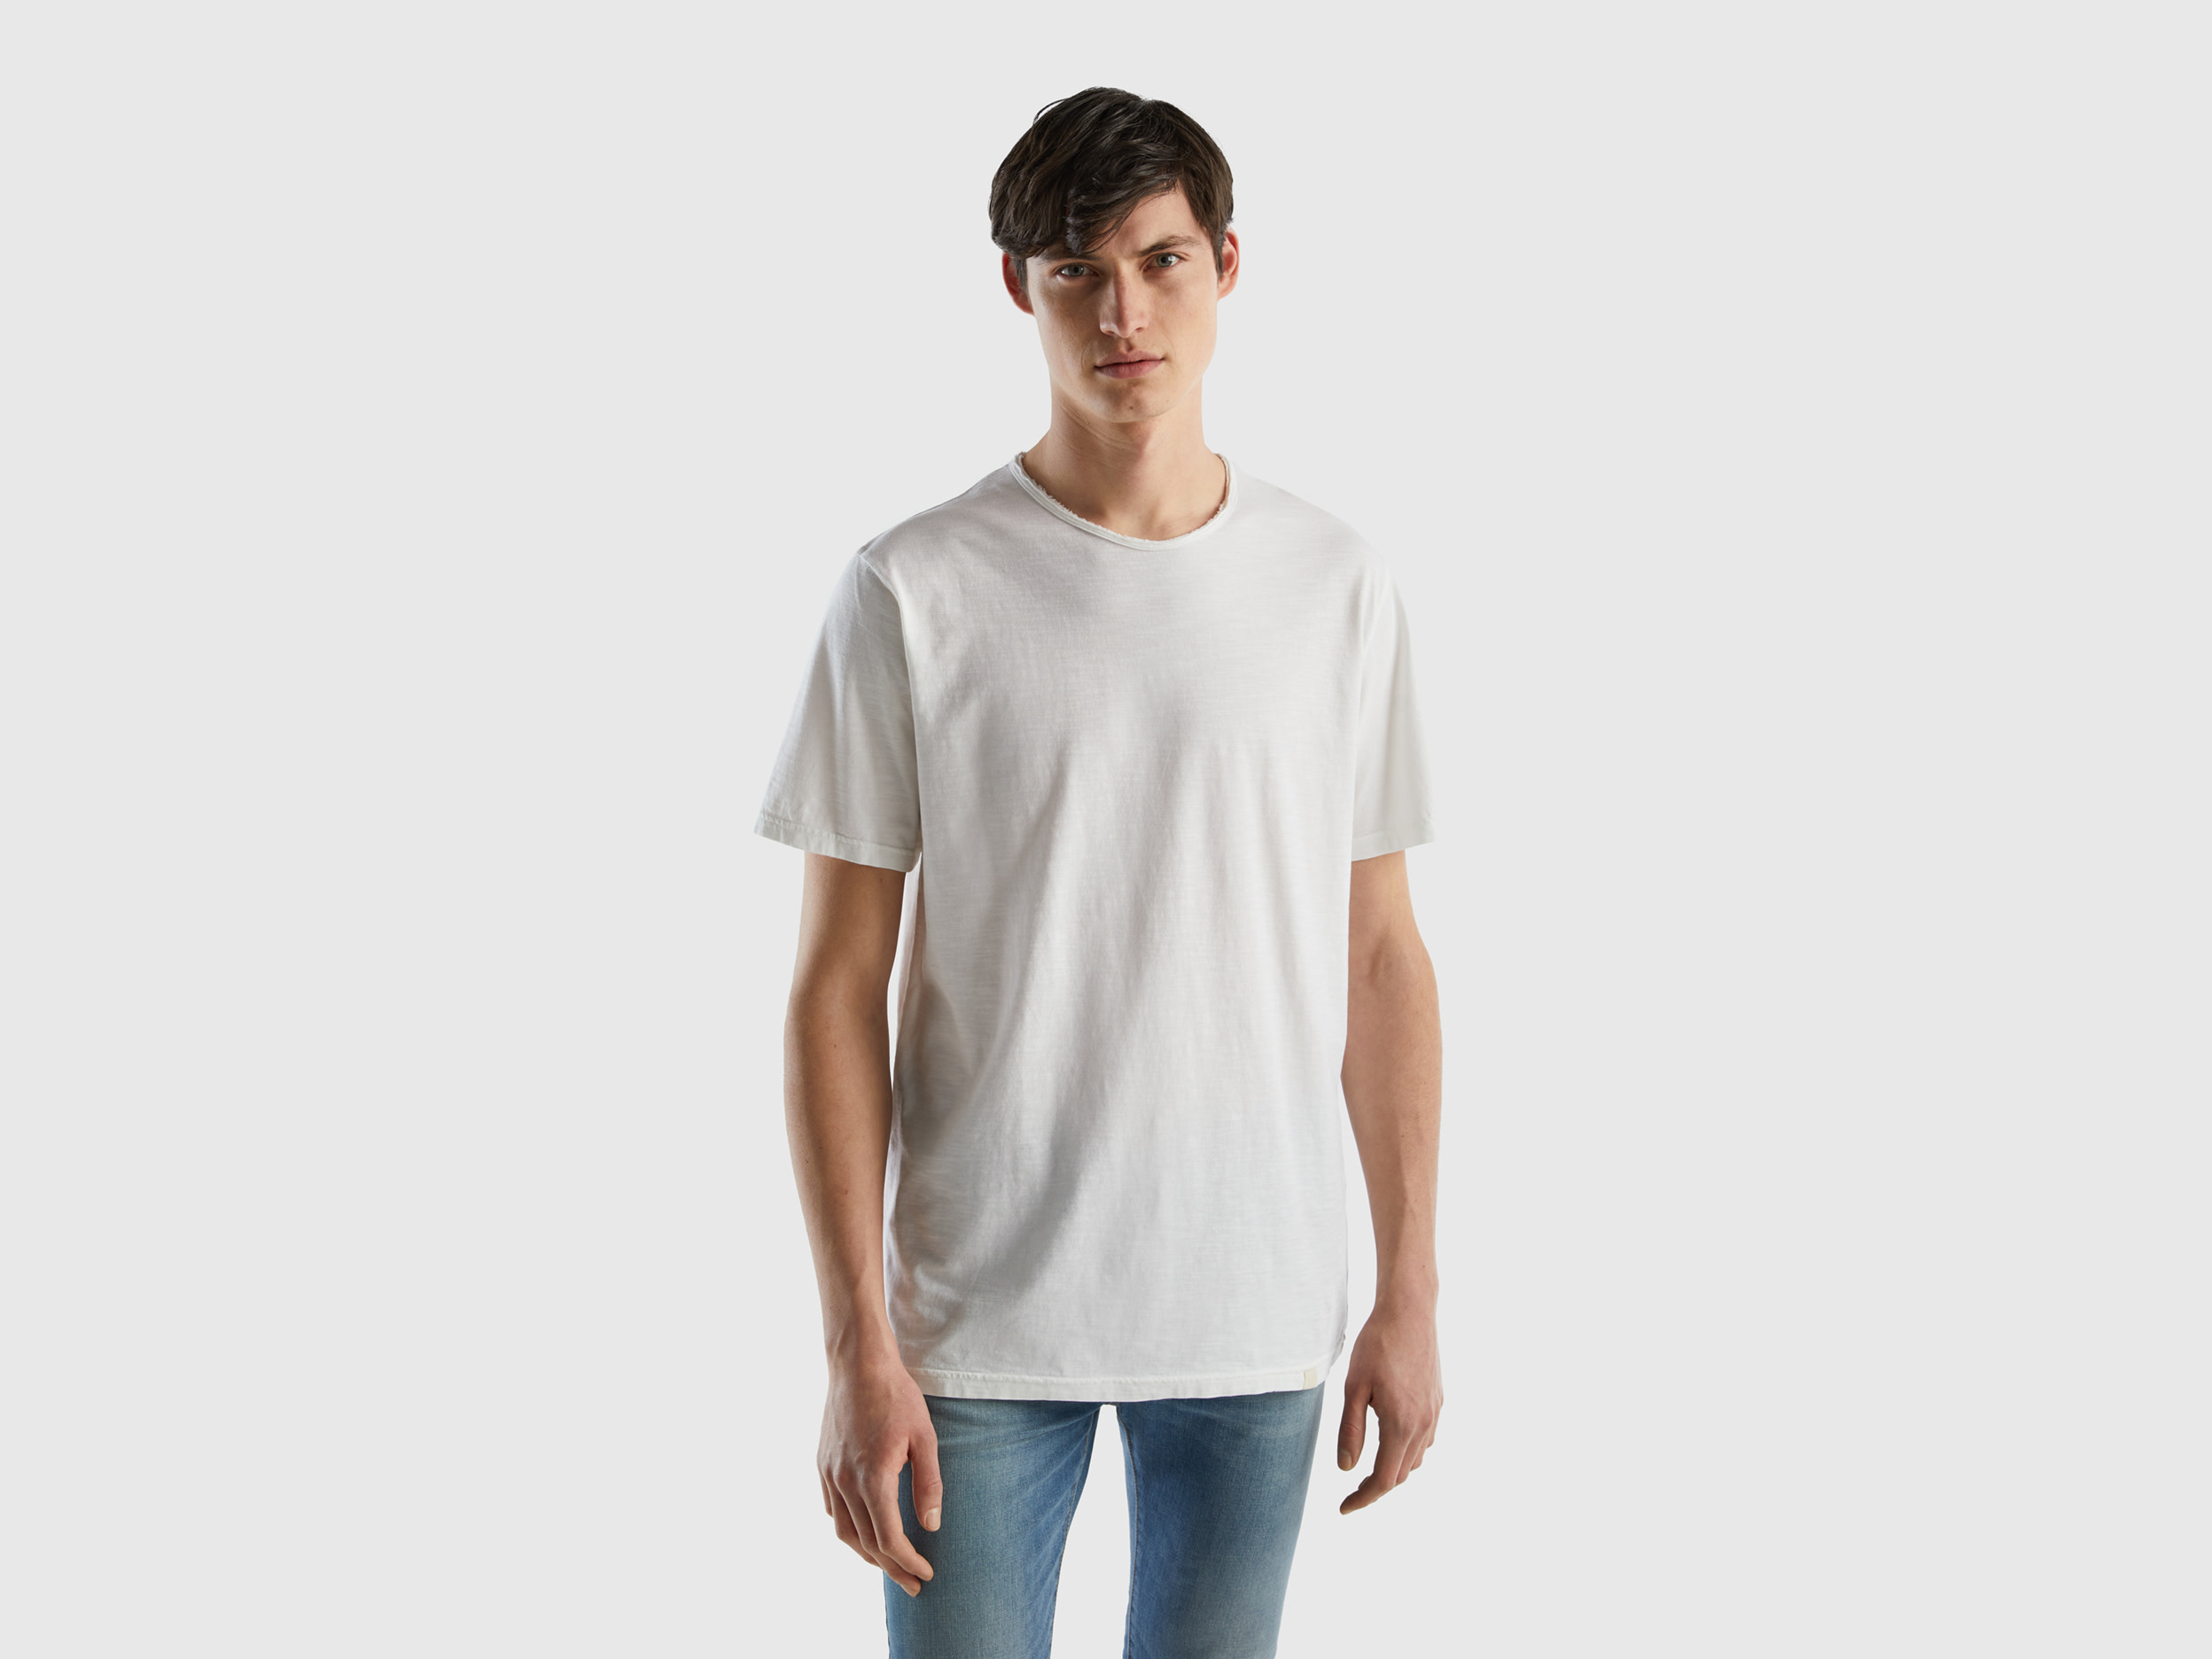 Benetton, White T-shirt In Slub Cotton, size L, White, Men